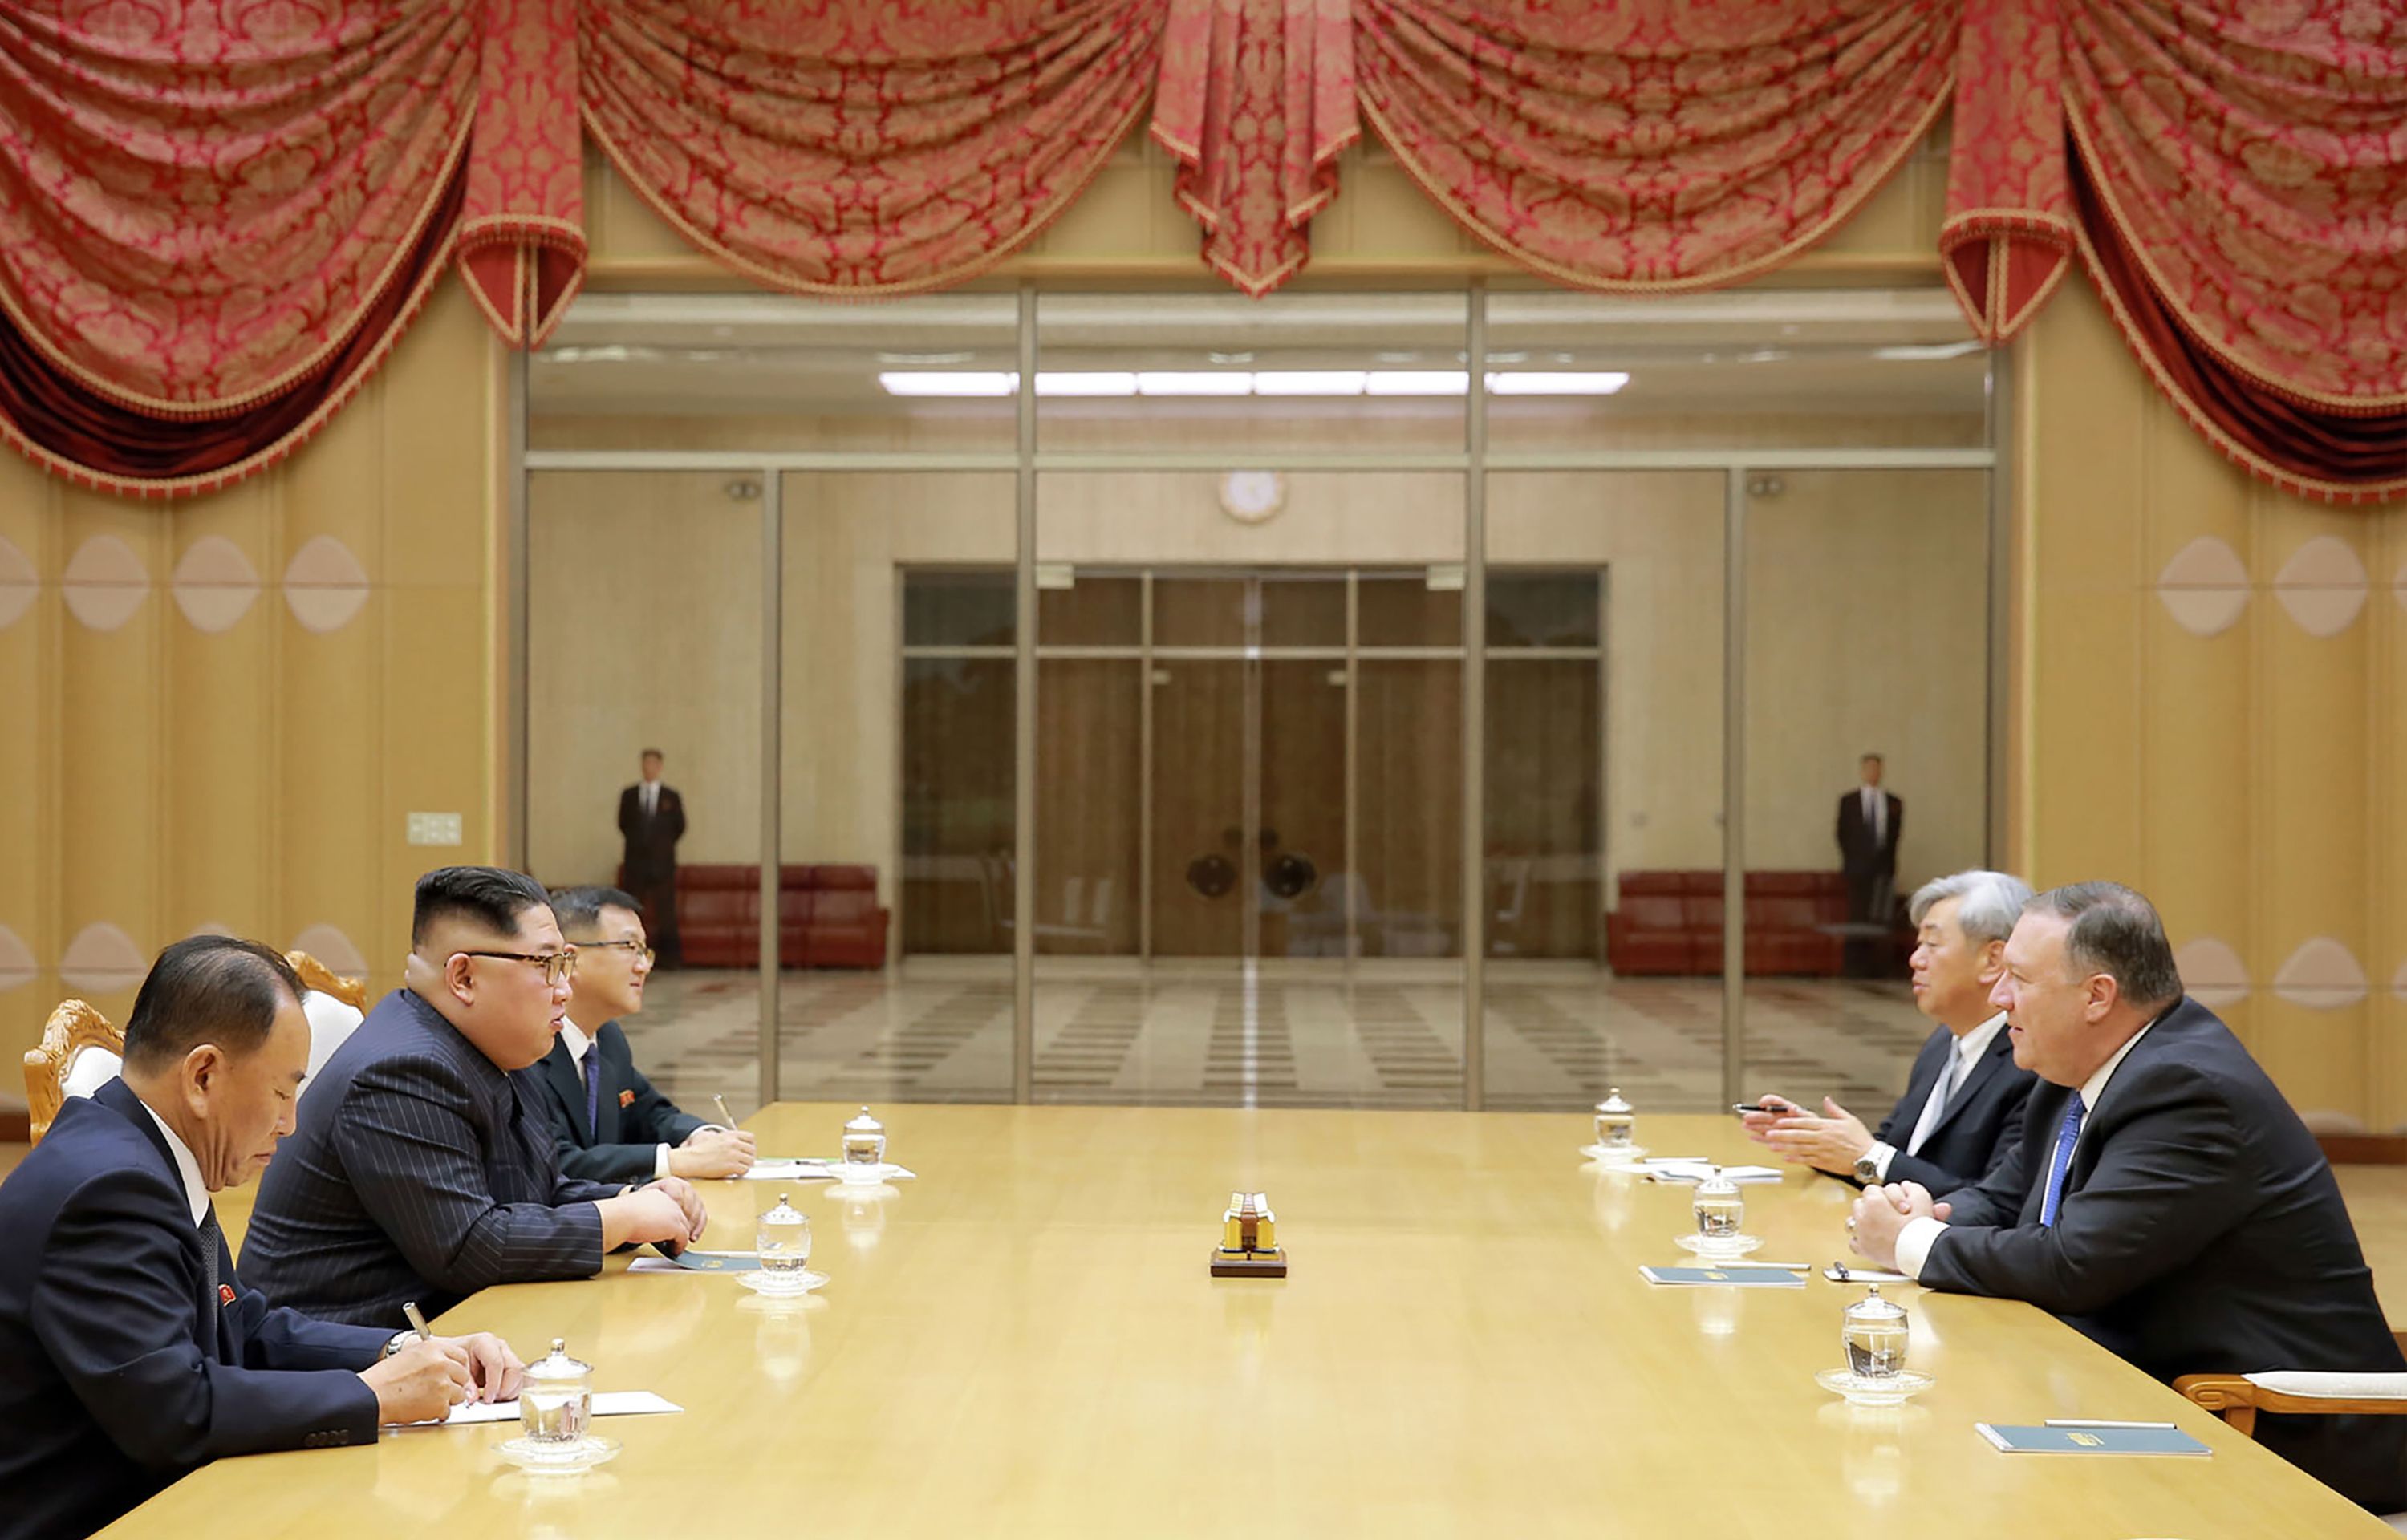 اللقاء بين زعيم كوريا ووزير الخارجية الأمريكى